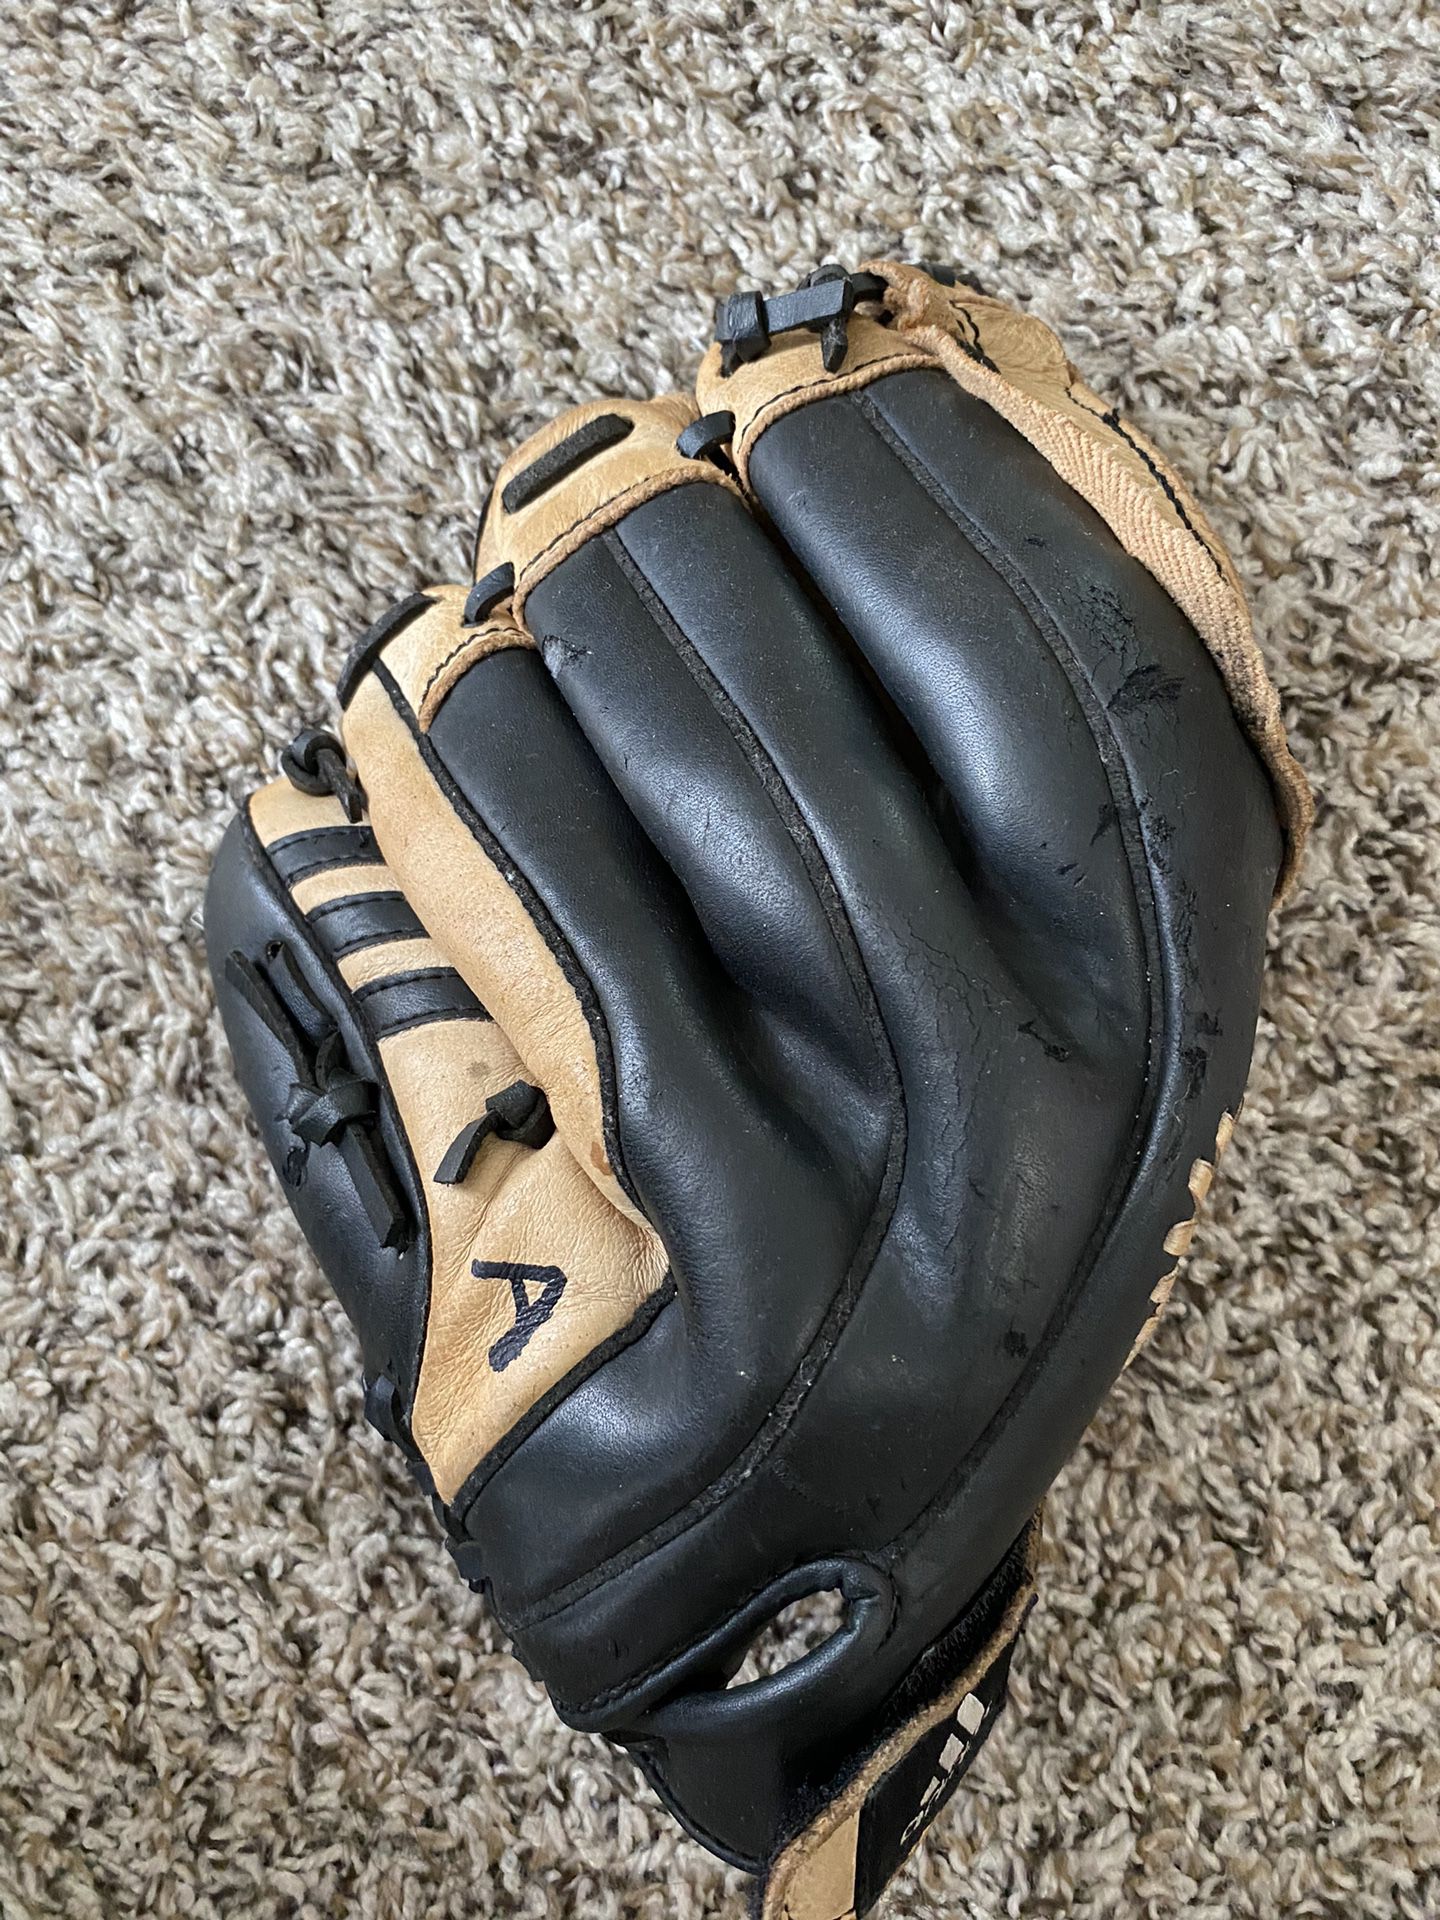 Baseball Glove 10”